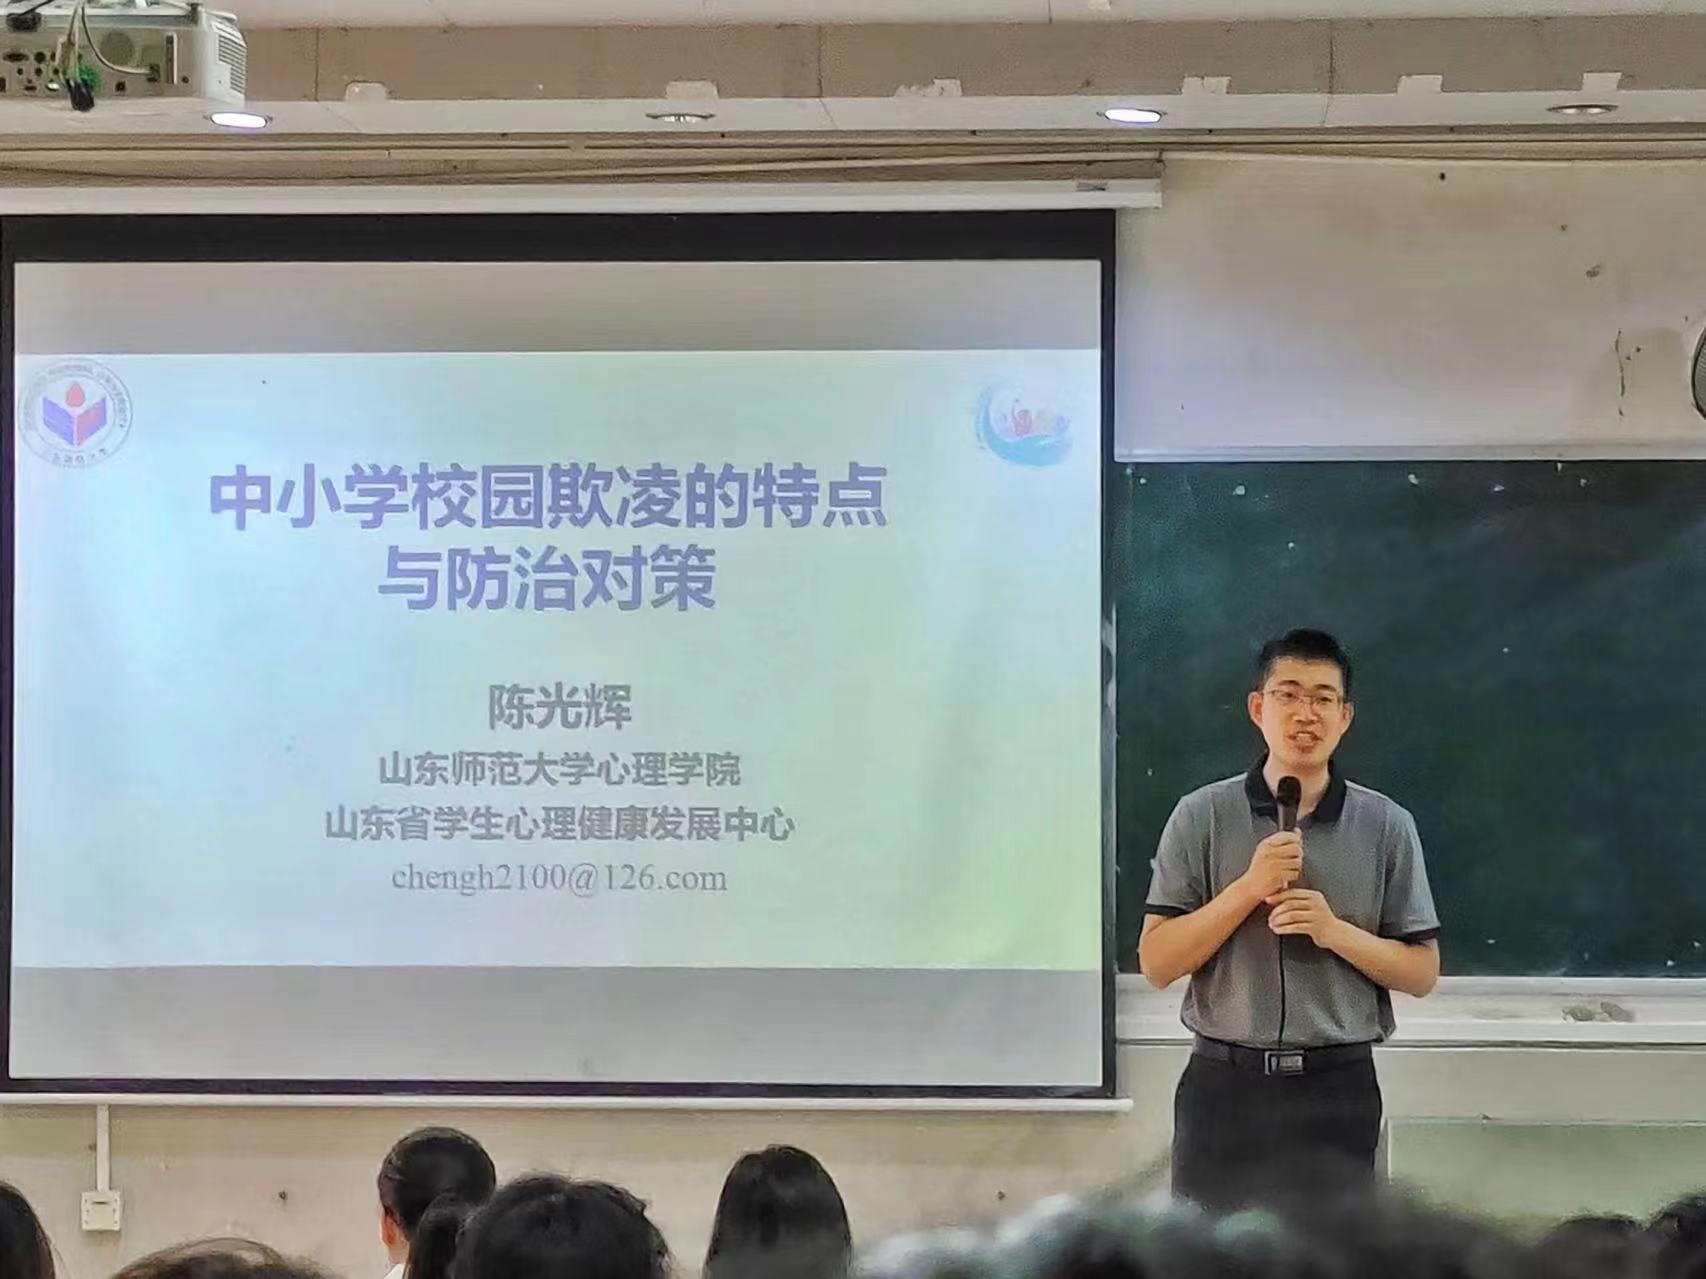 山东师范大学陈光辉教授为大发体育官网师生做学术讲座